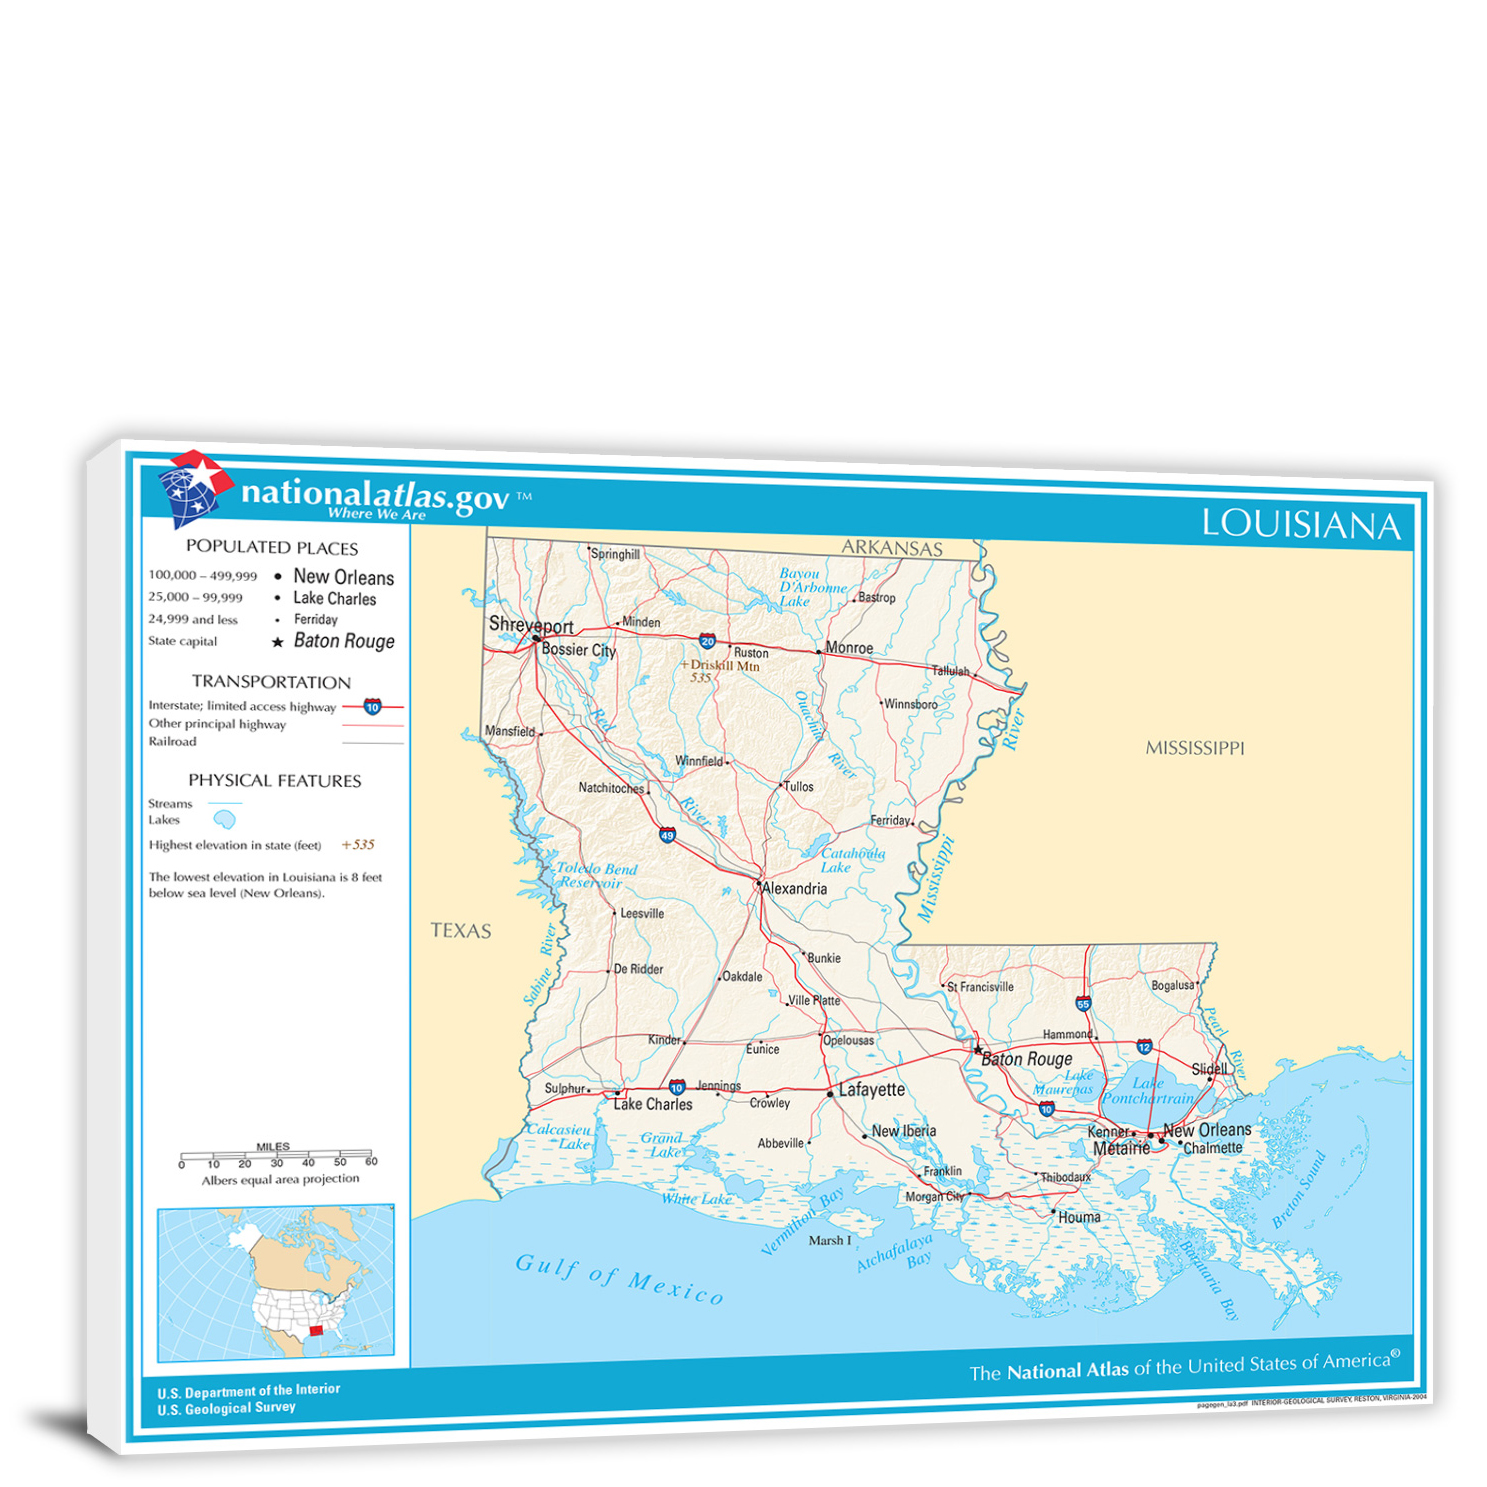 CWA180 Louisiana National Atlas Reference Map 00 